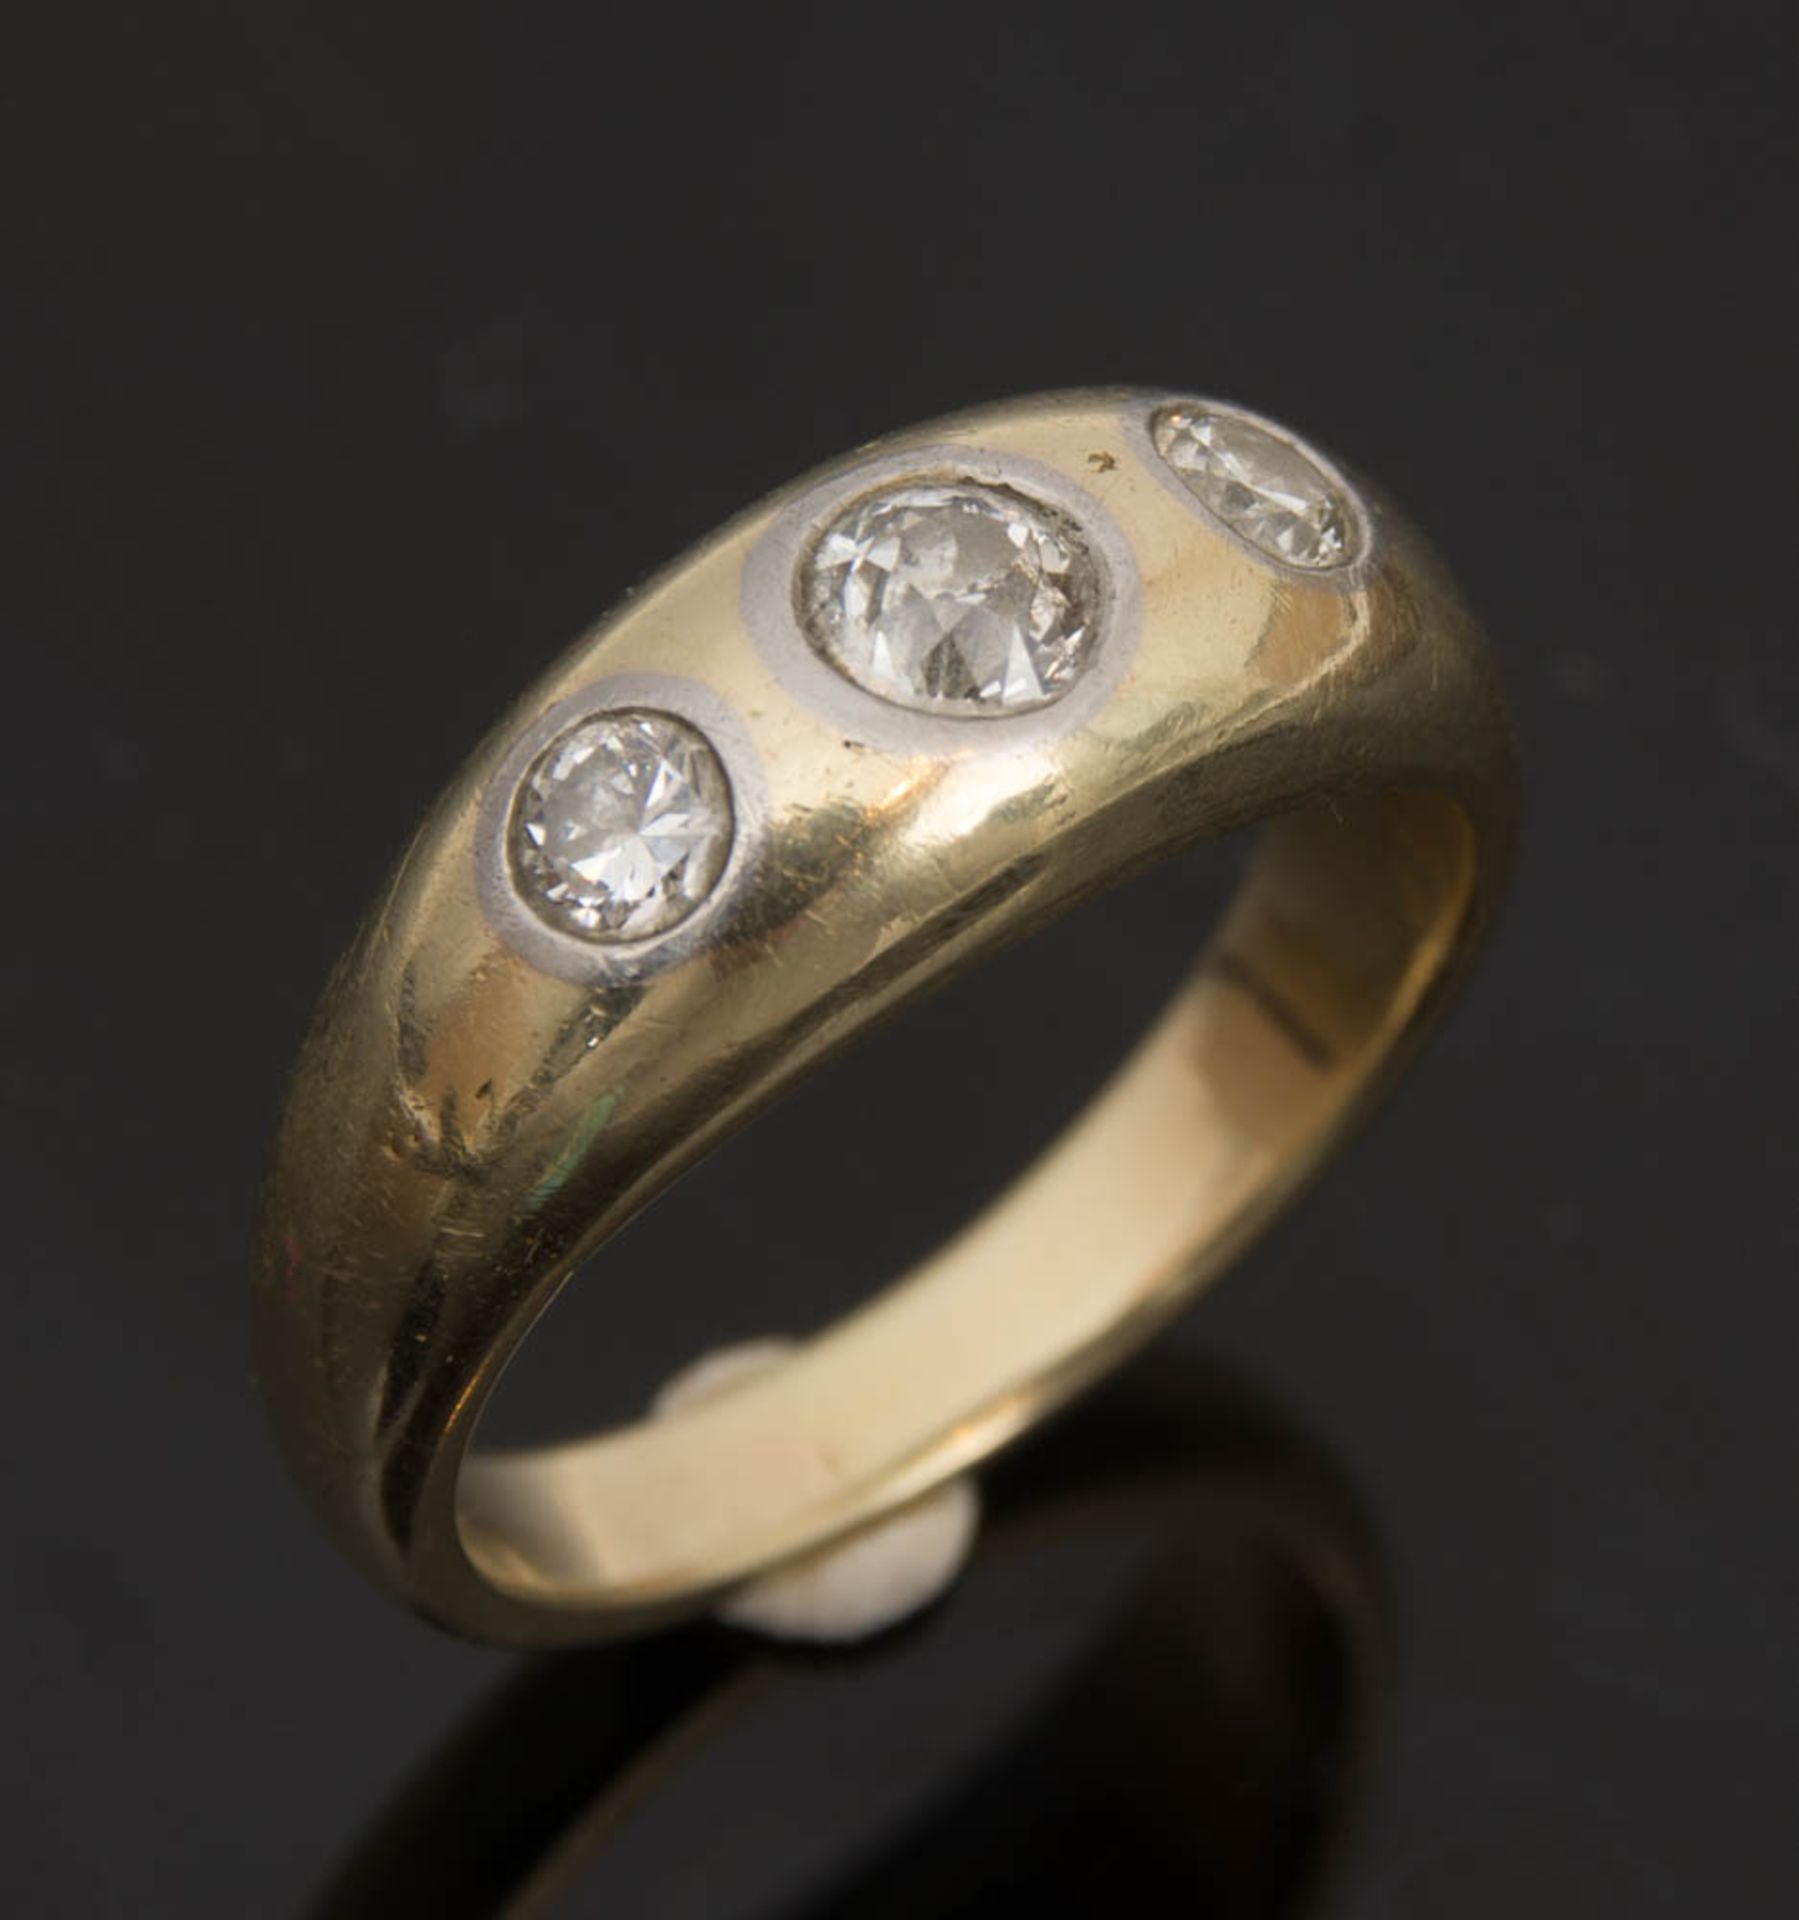 GOLDRING MIT 3 STEINEN, 585er Gold, 20. Jh.Ring aus 585er Gold mit 3 Moissaniten, 7,9 g, 1,8 cm D. - Bild 4 aus 4